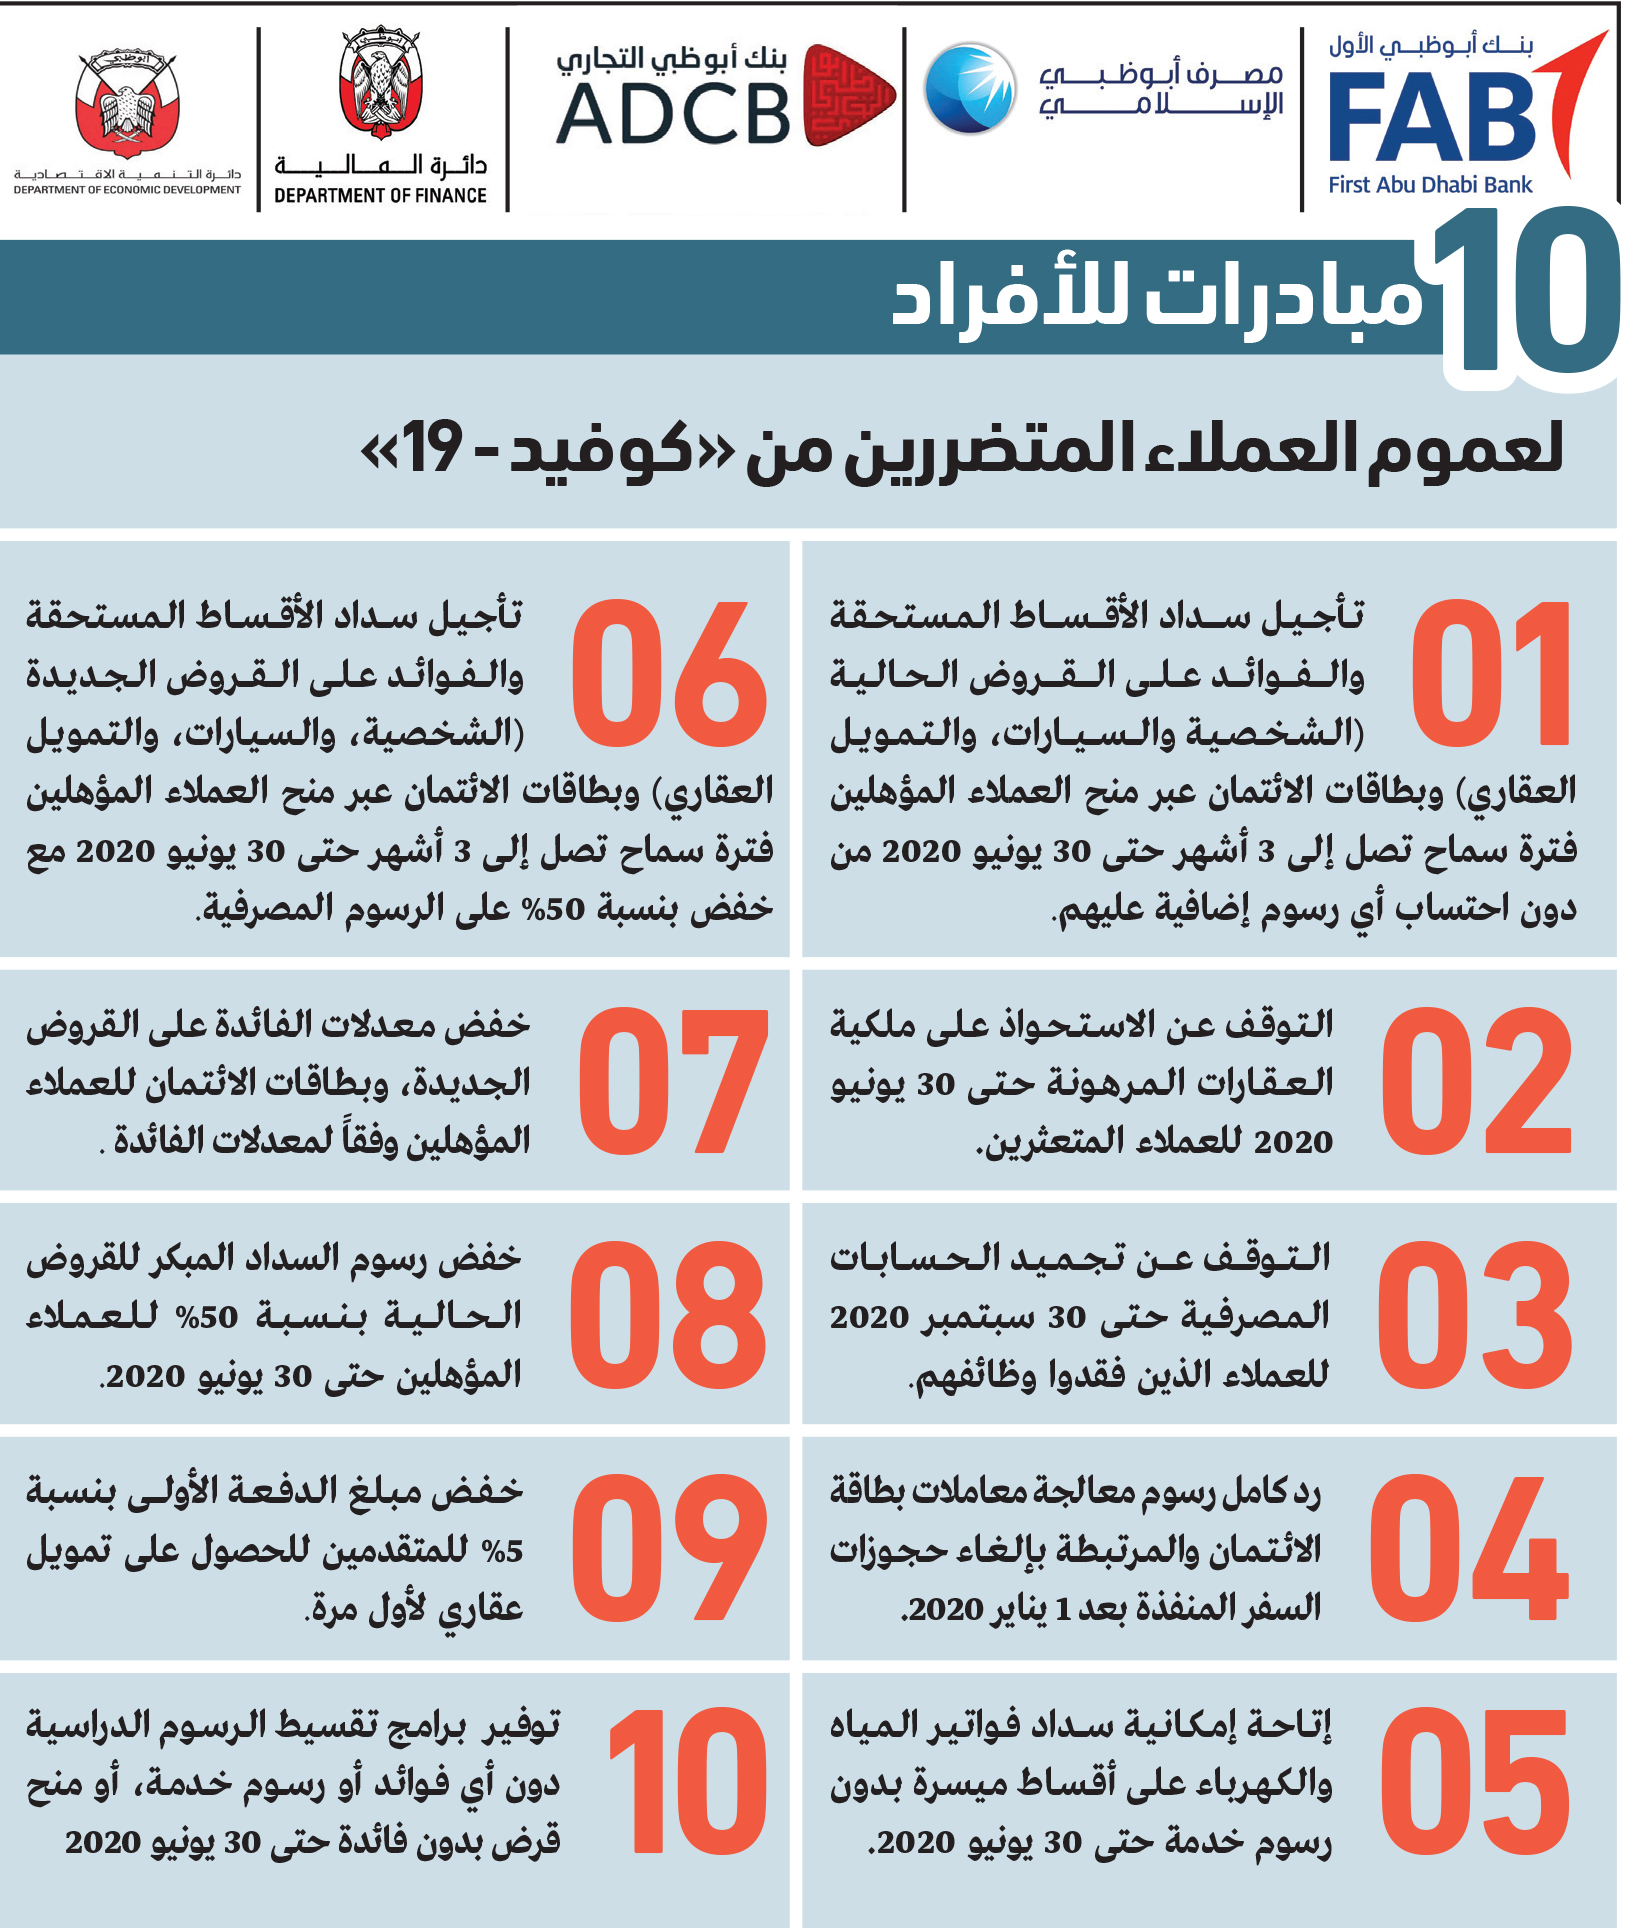 17 مبادرة مالية لتلبية احتياجات المجتمع وقطاع الأعمال في أبوظبي الاقتصادي السوق المحلي البيان